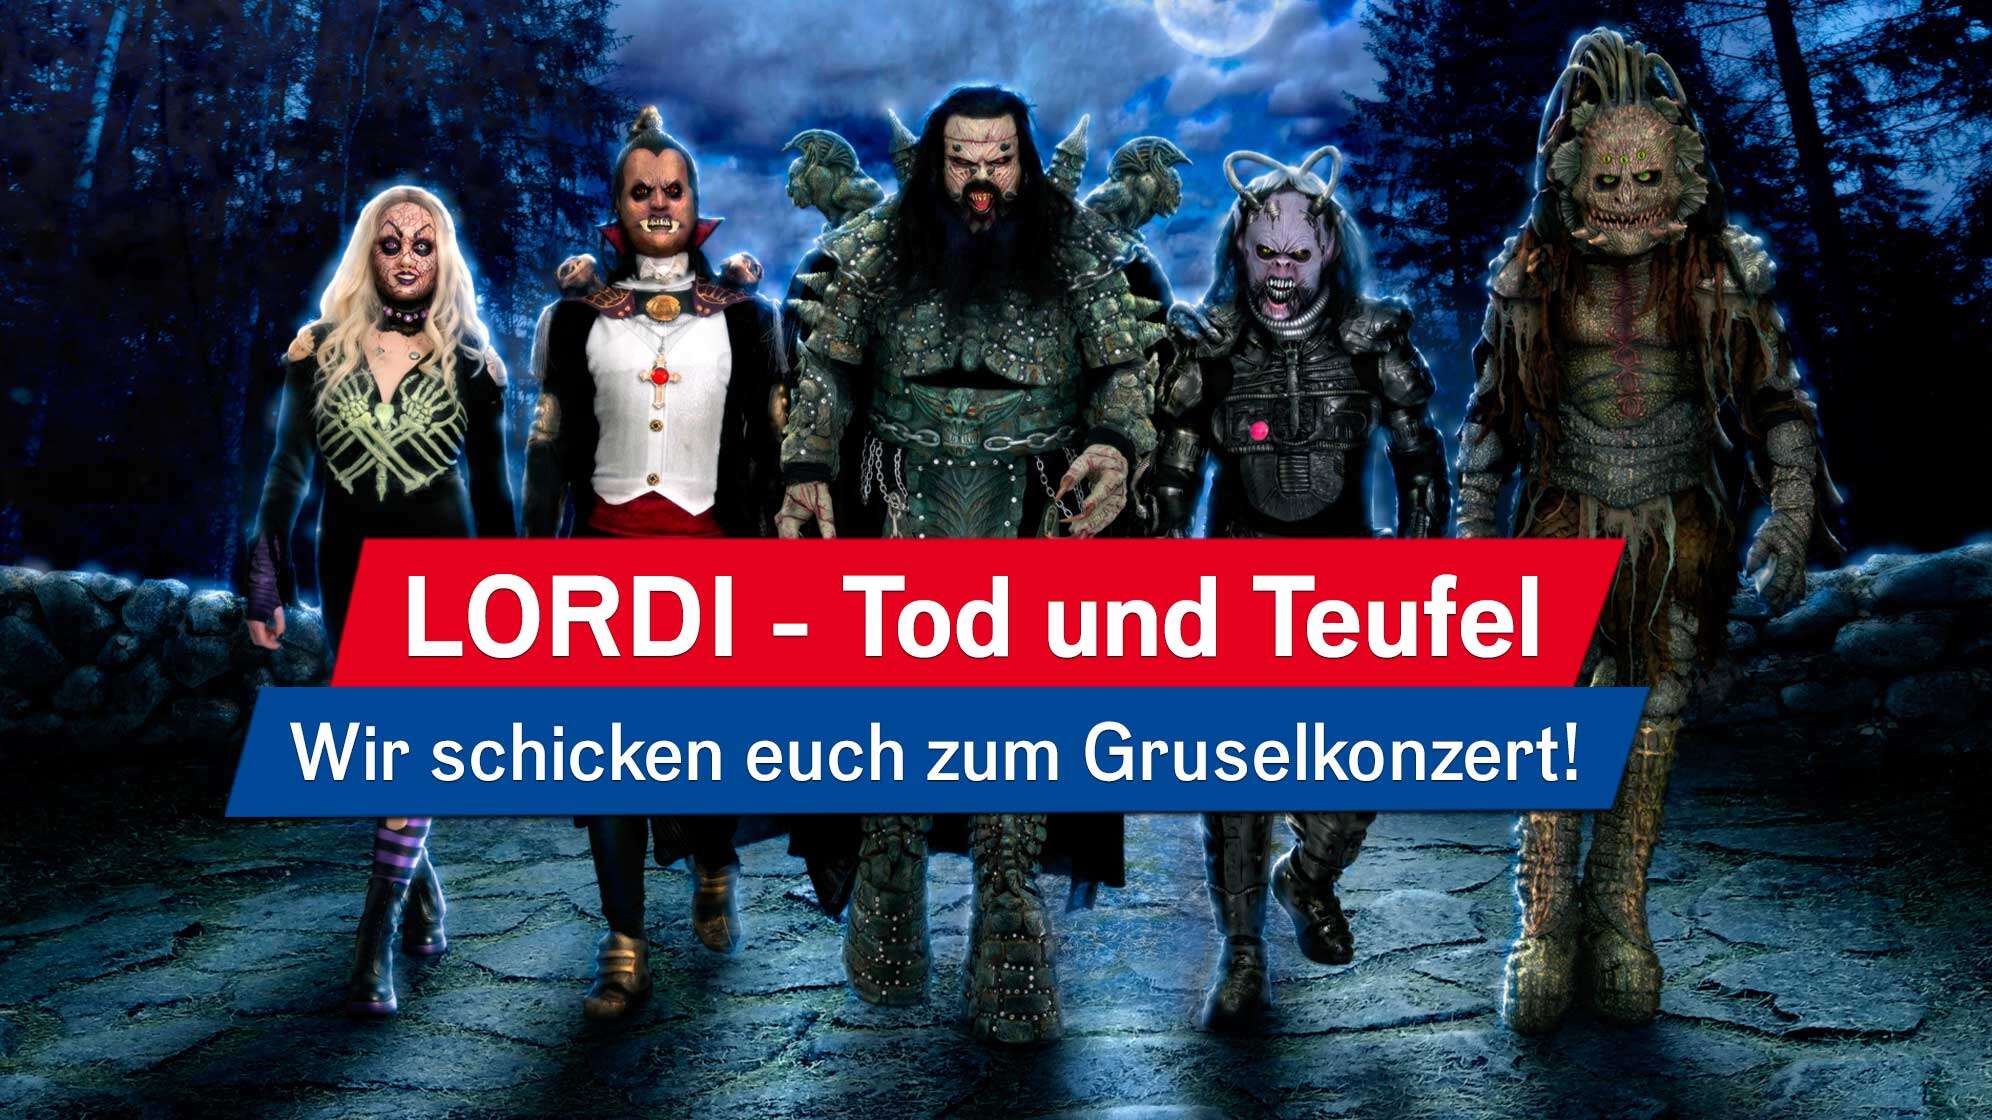 Ein Bandfoto mit Lordi und der Aufschrift: LORDI - Tod und Teufel: Wir schicken euch zum Gruselkonzert!